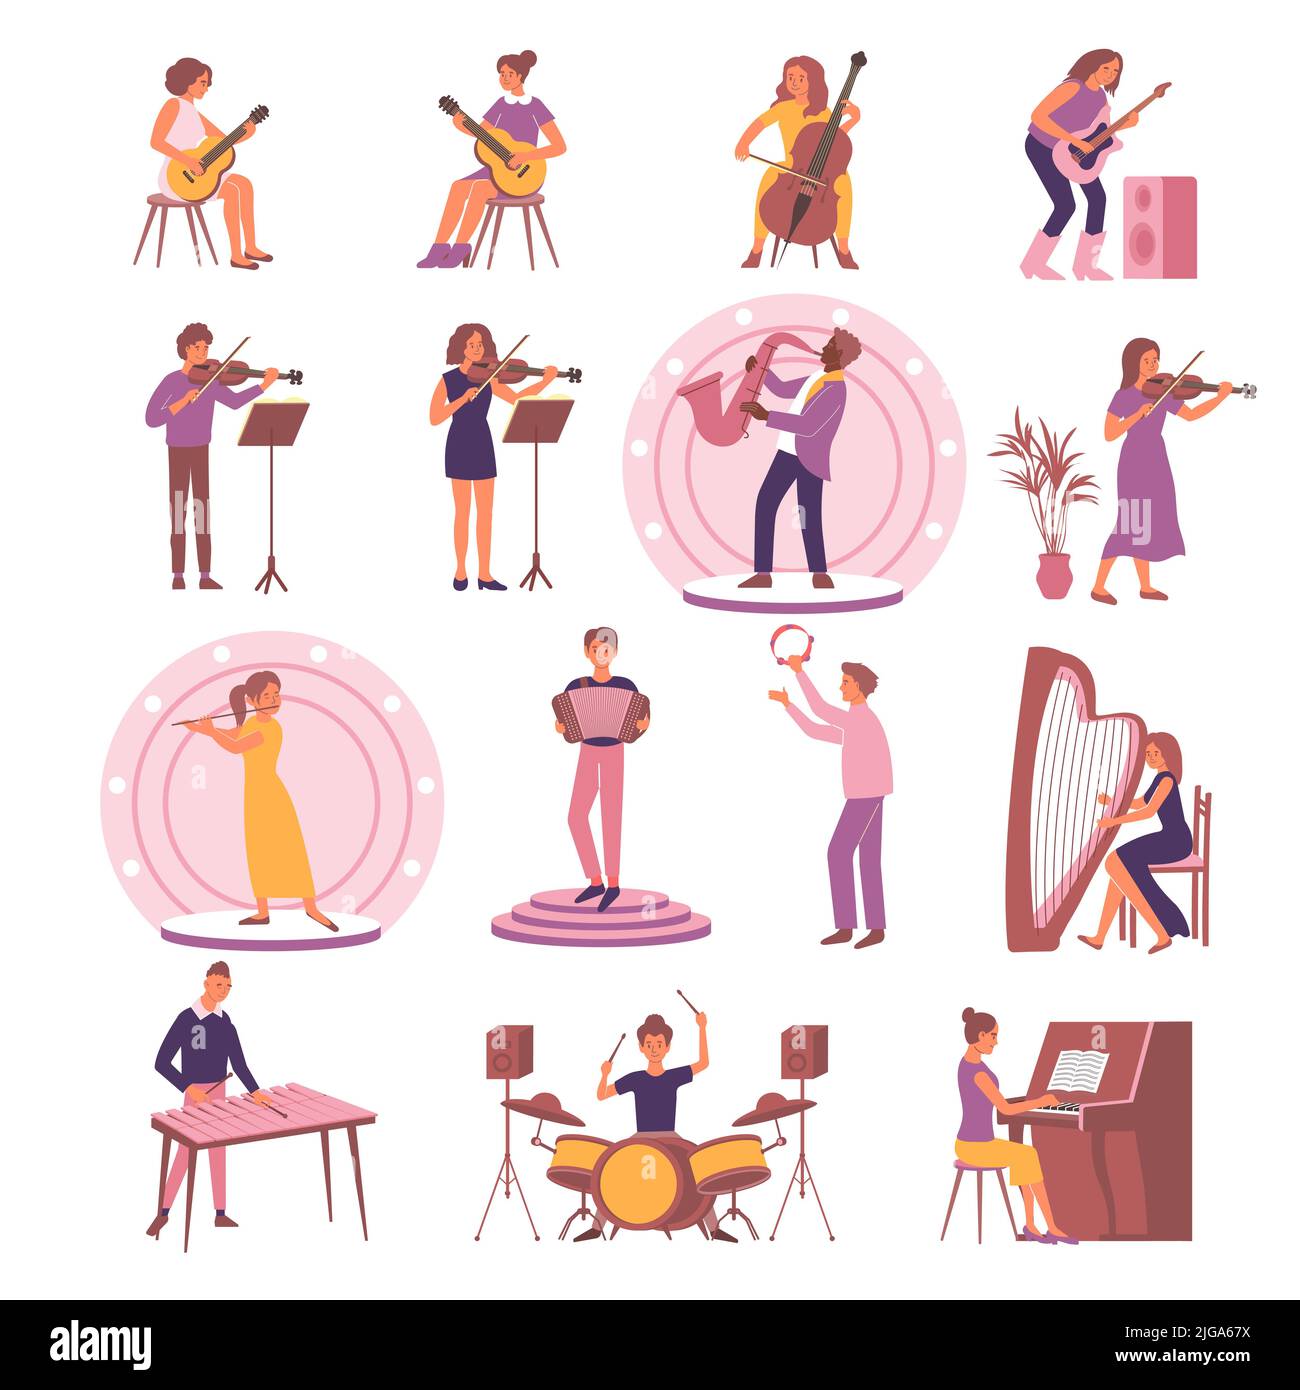 Imparare musica set con icone isolate e immagini piatte di strumenti con riproduzione di persone e podi illustrazione vettoriale Illustrazione Vettoriale